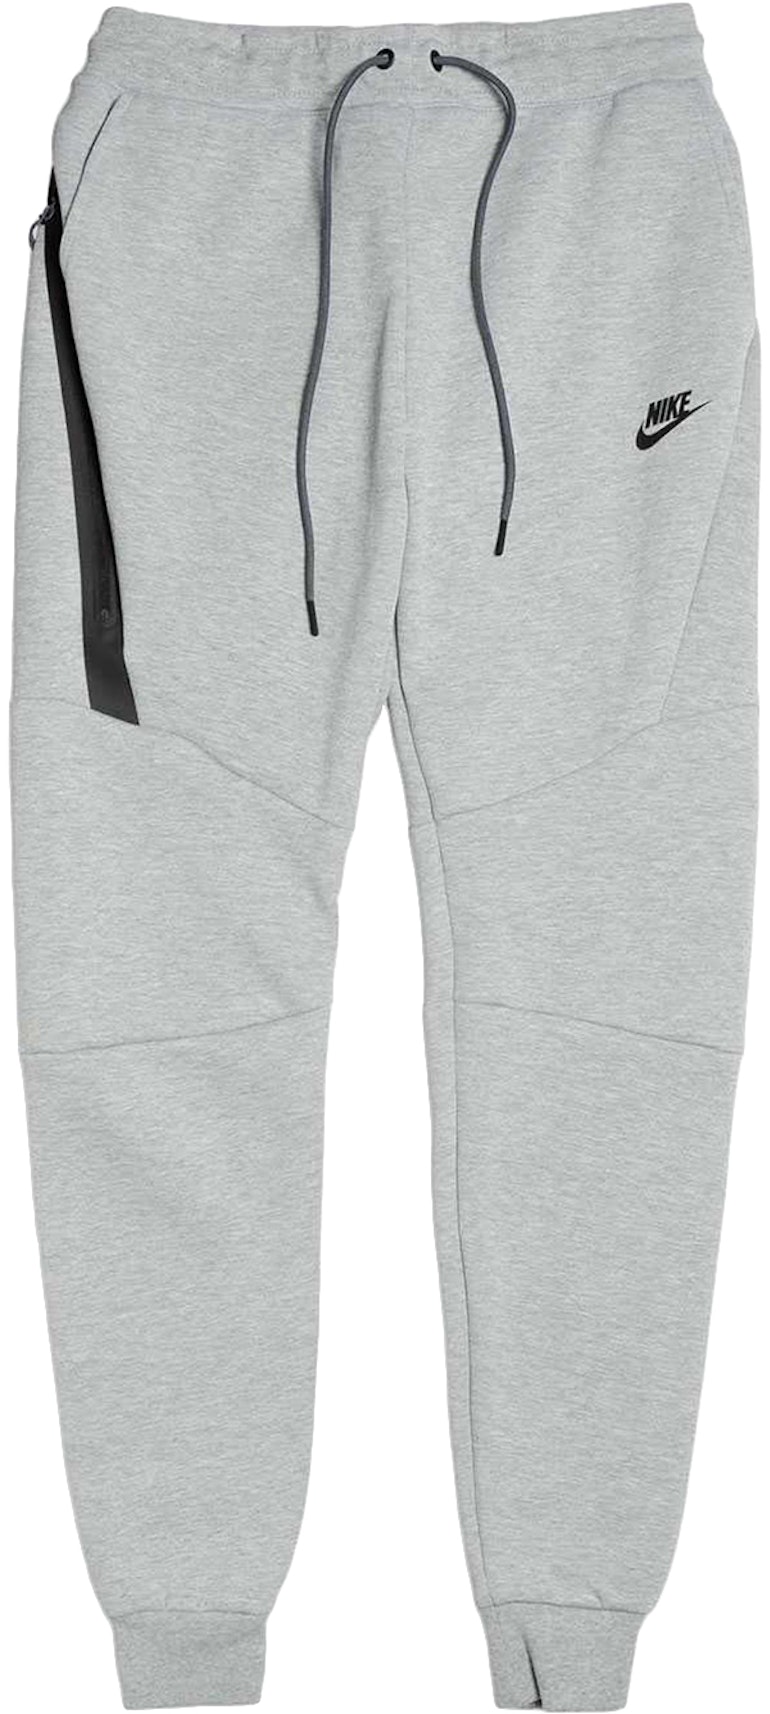 Nike Sportswear Tech Fleece Pant Grey/Black - US